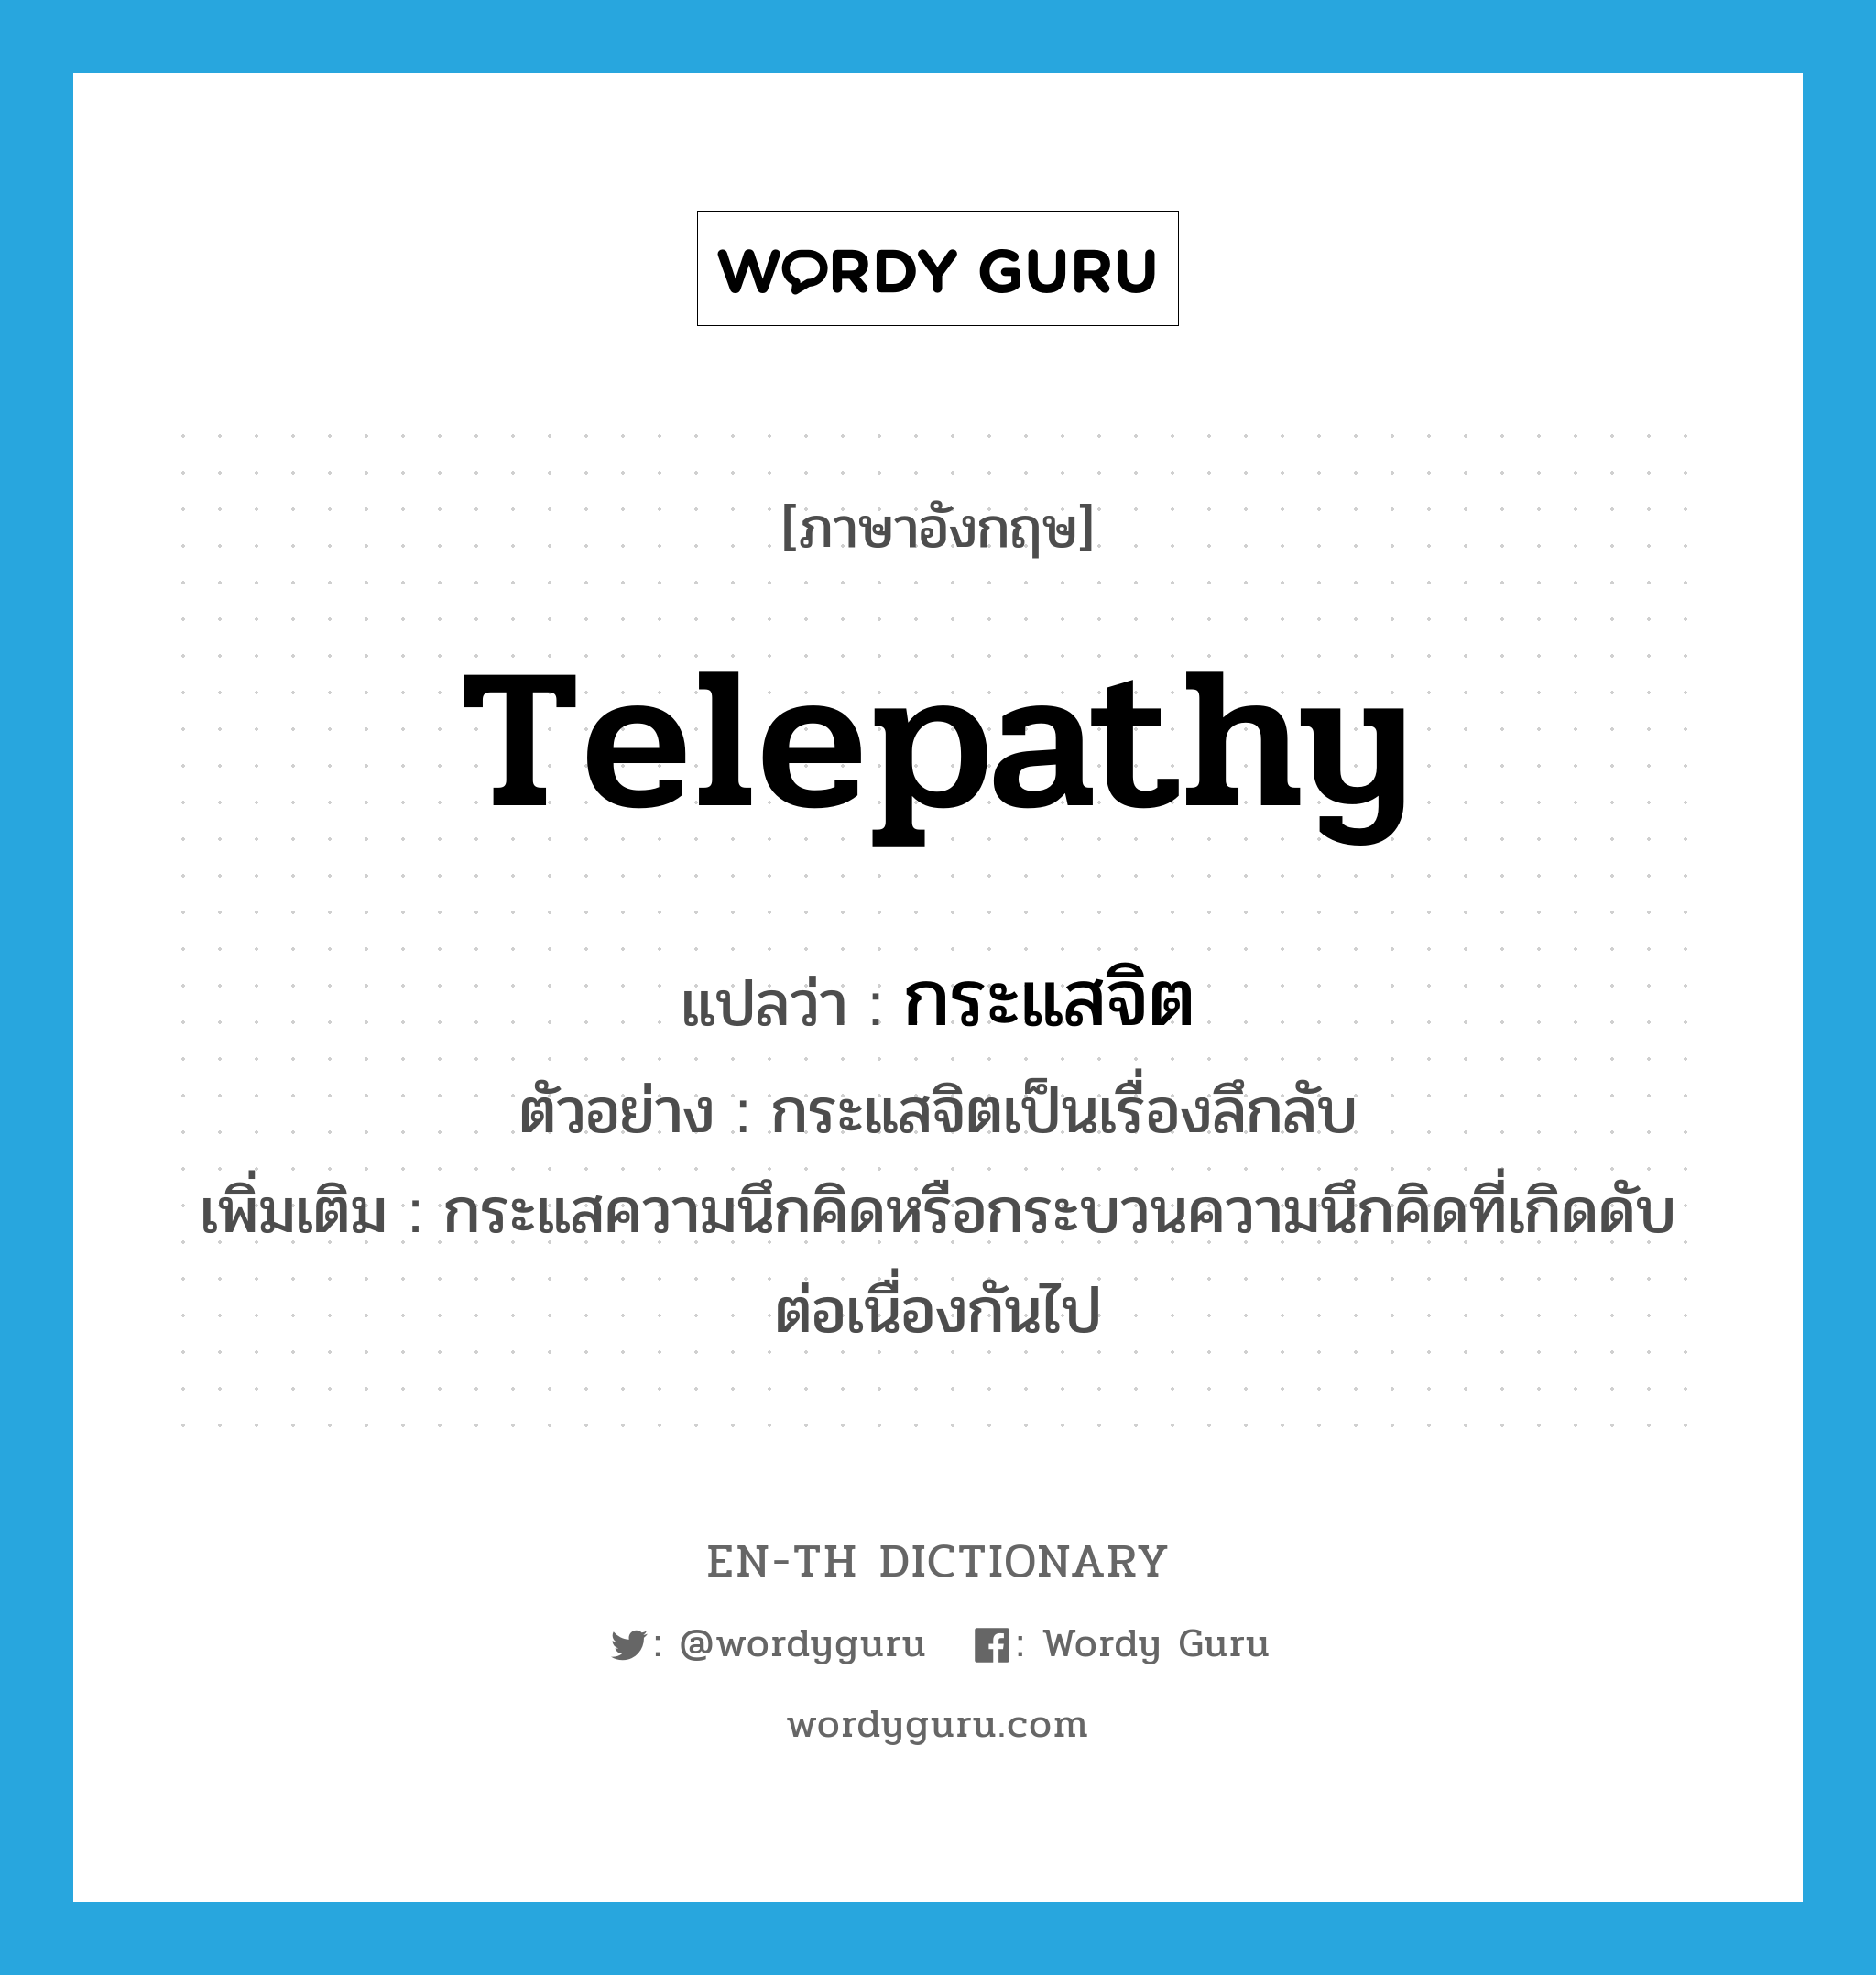 telepathy แปลว่า?, คำศัพท์ภาษาอังกฤษ telepathy แปลว่า กระแสจิต ประเภท N ตัวอย่าง กระแสจิตเป็นเรื่องลึกลับ เพิ่มเติม กระแสความนึกคิดหรือกระบวนความนึกคิดที่เกิดดับต่อเนื่องกันไป หมวด N